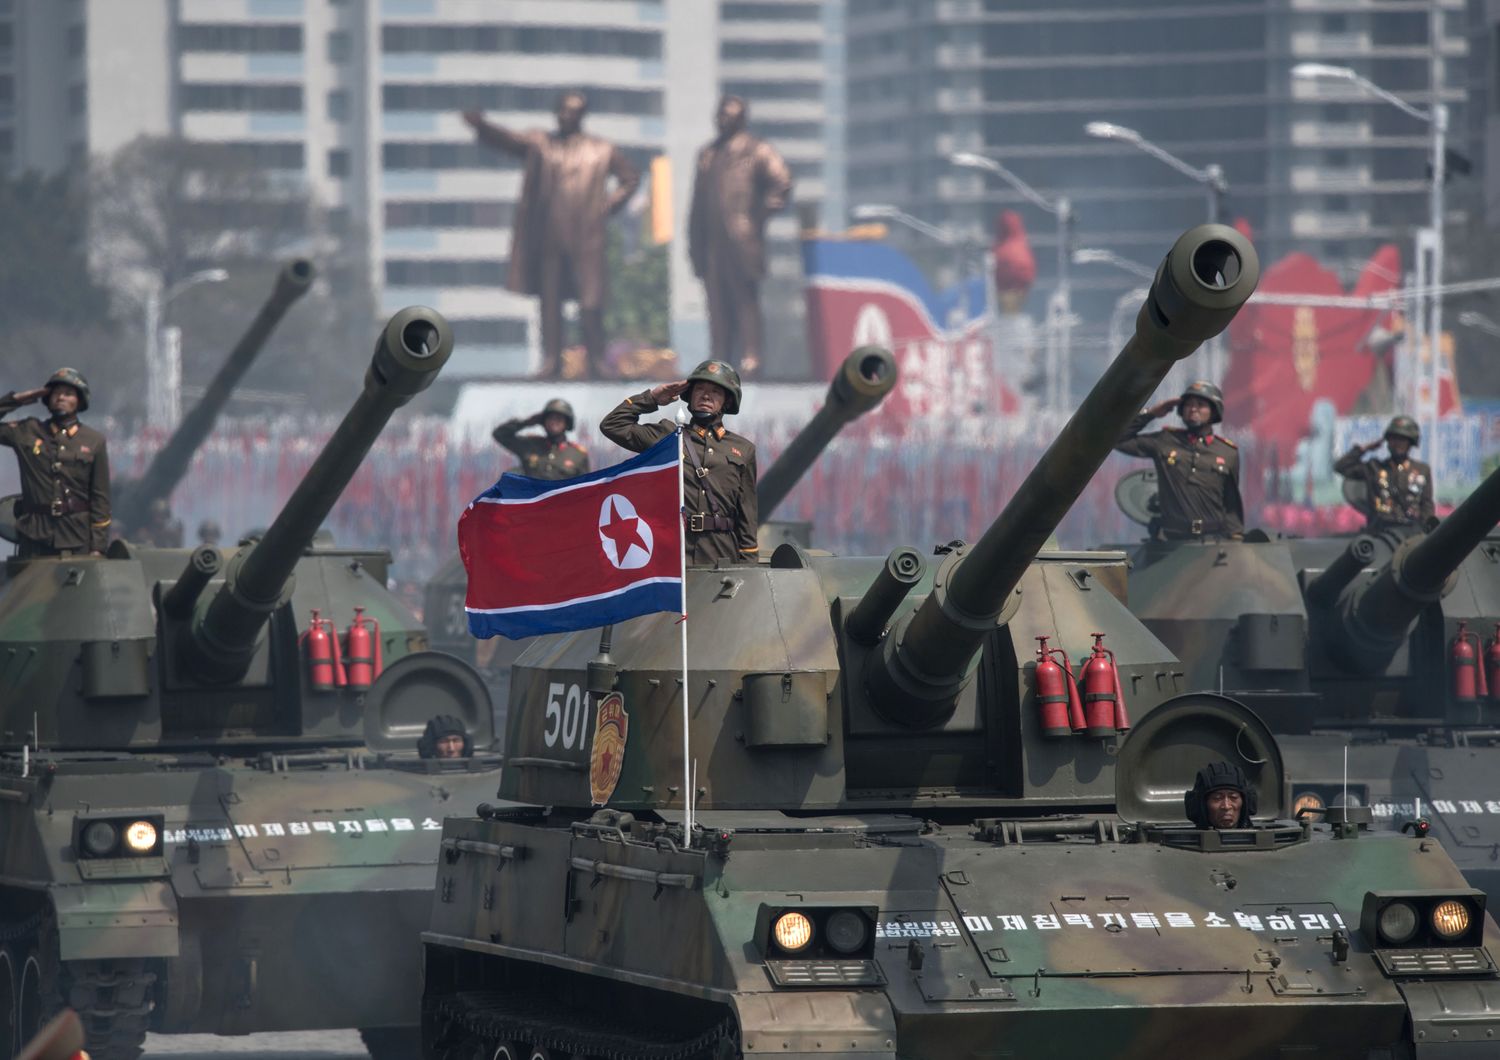 La Corea del Nord celebra oggi il 105esimo anniversario del padre fondatore del Paese, Kim Il-Sung, con una grande parata militare nella piazza centrale di Pyongyang, mentre la tensione cresce sul regime guidato dal nipote, Kim Jong-Un, e sui suoi piani nucleari e missilistici (segue)